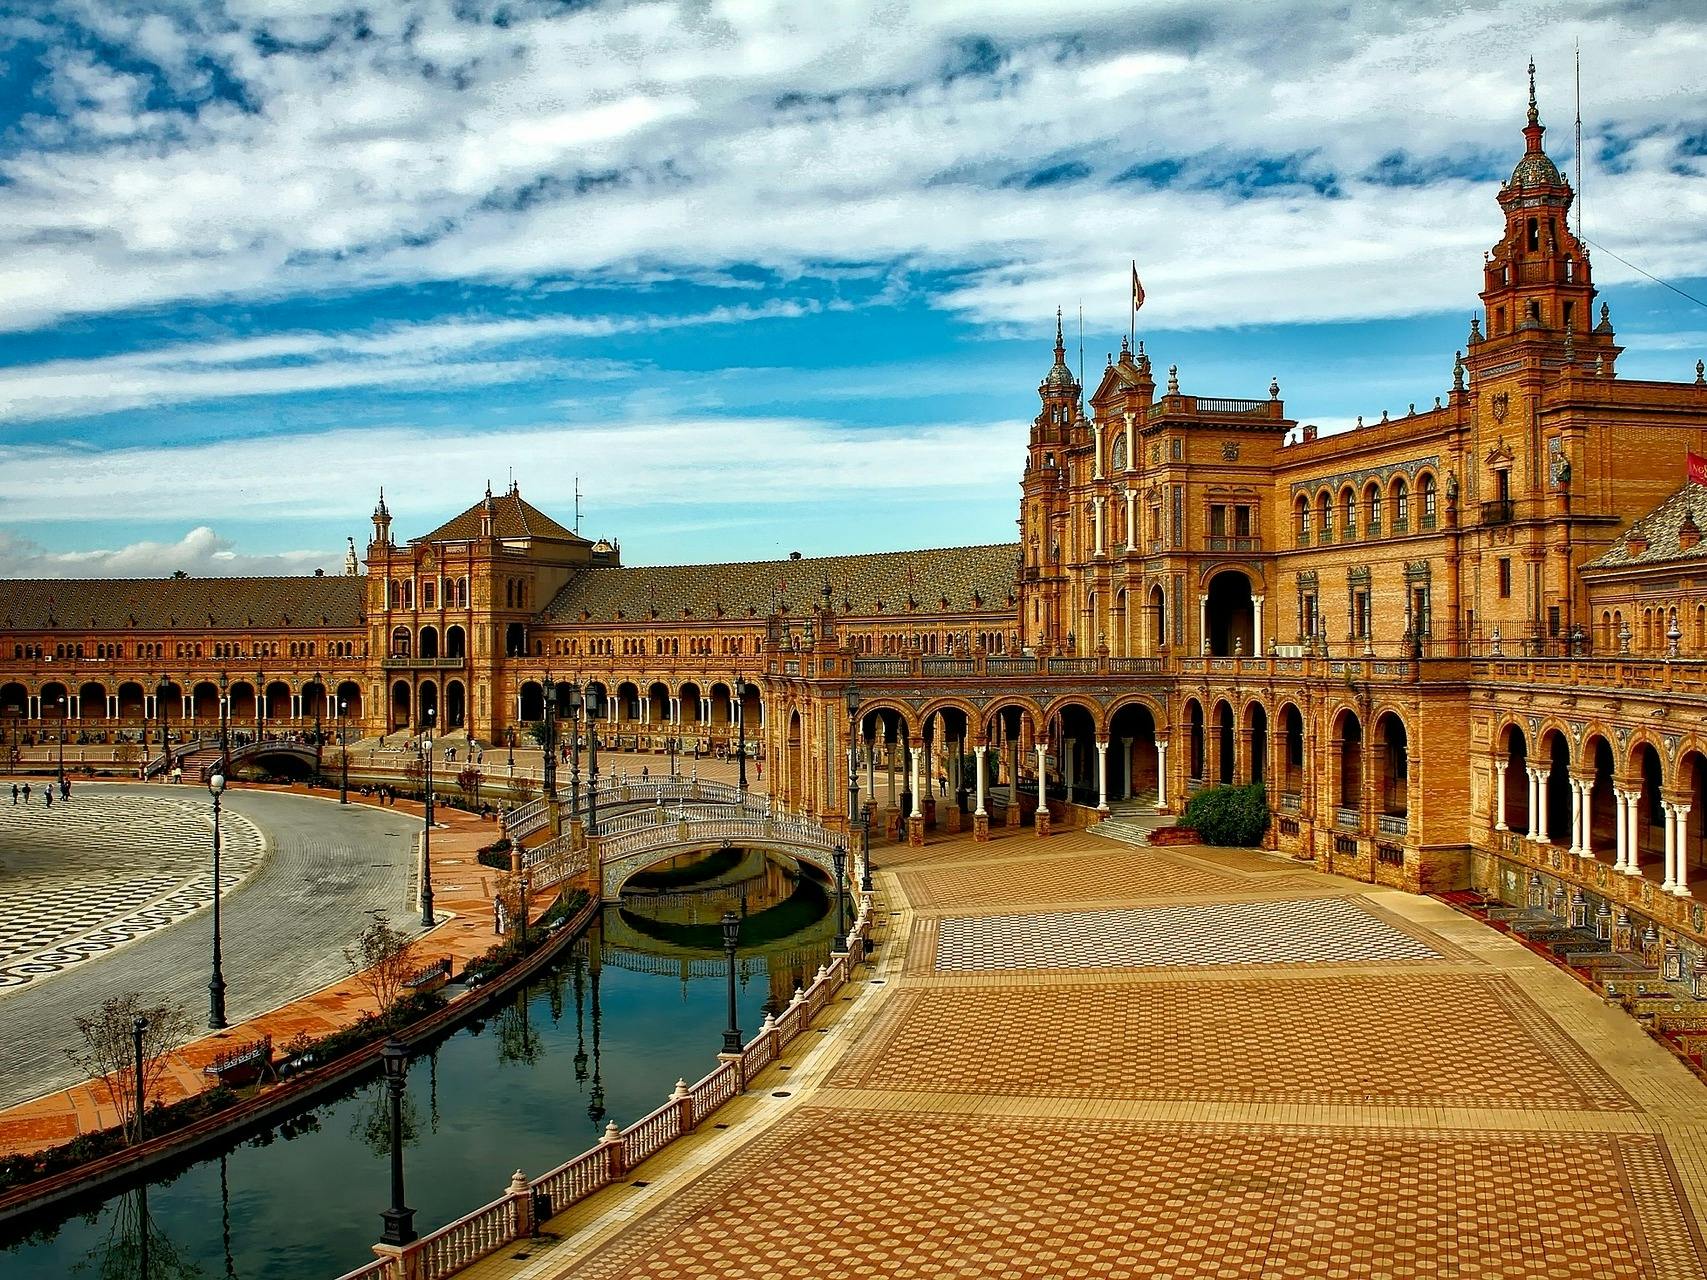 Excursión de un día a Sevilla desde Málaga a tu aire